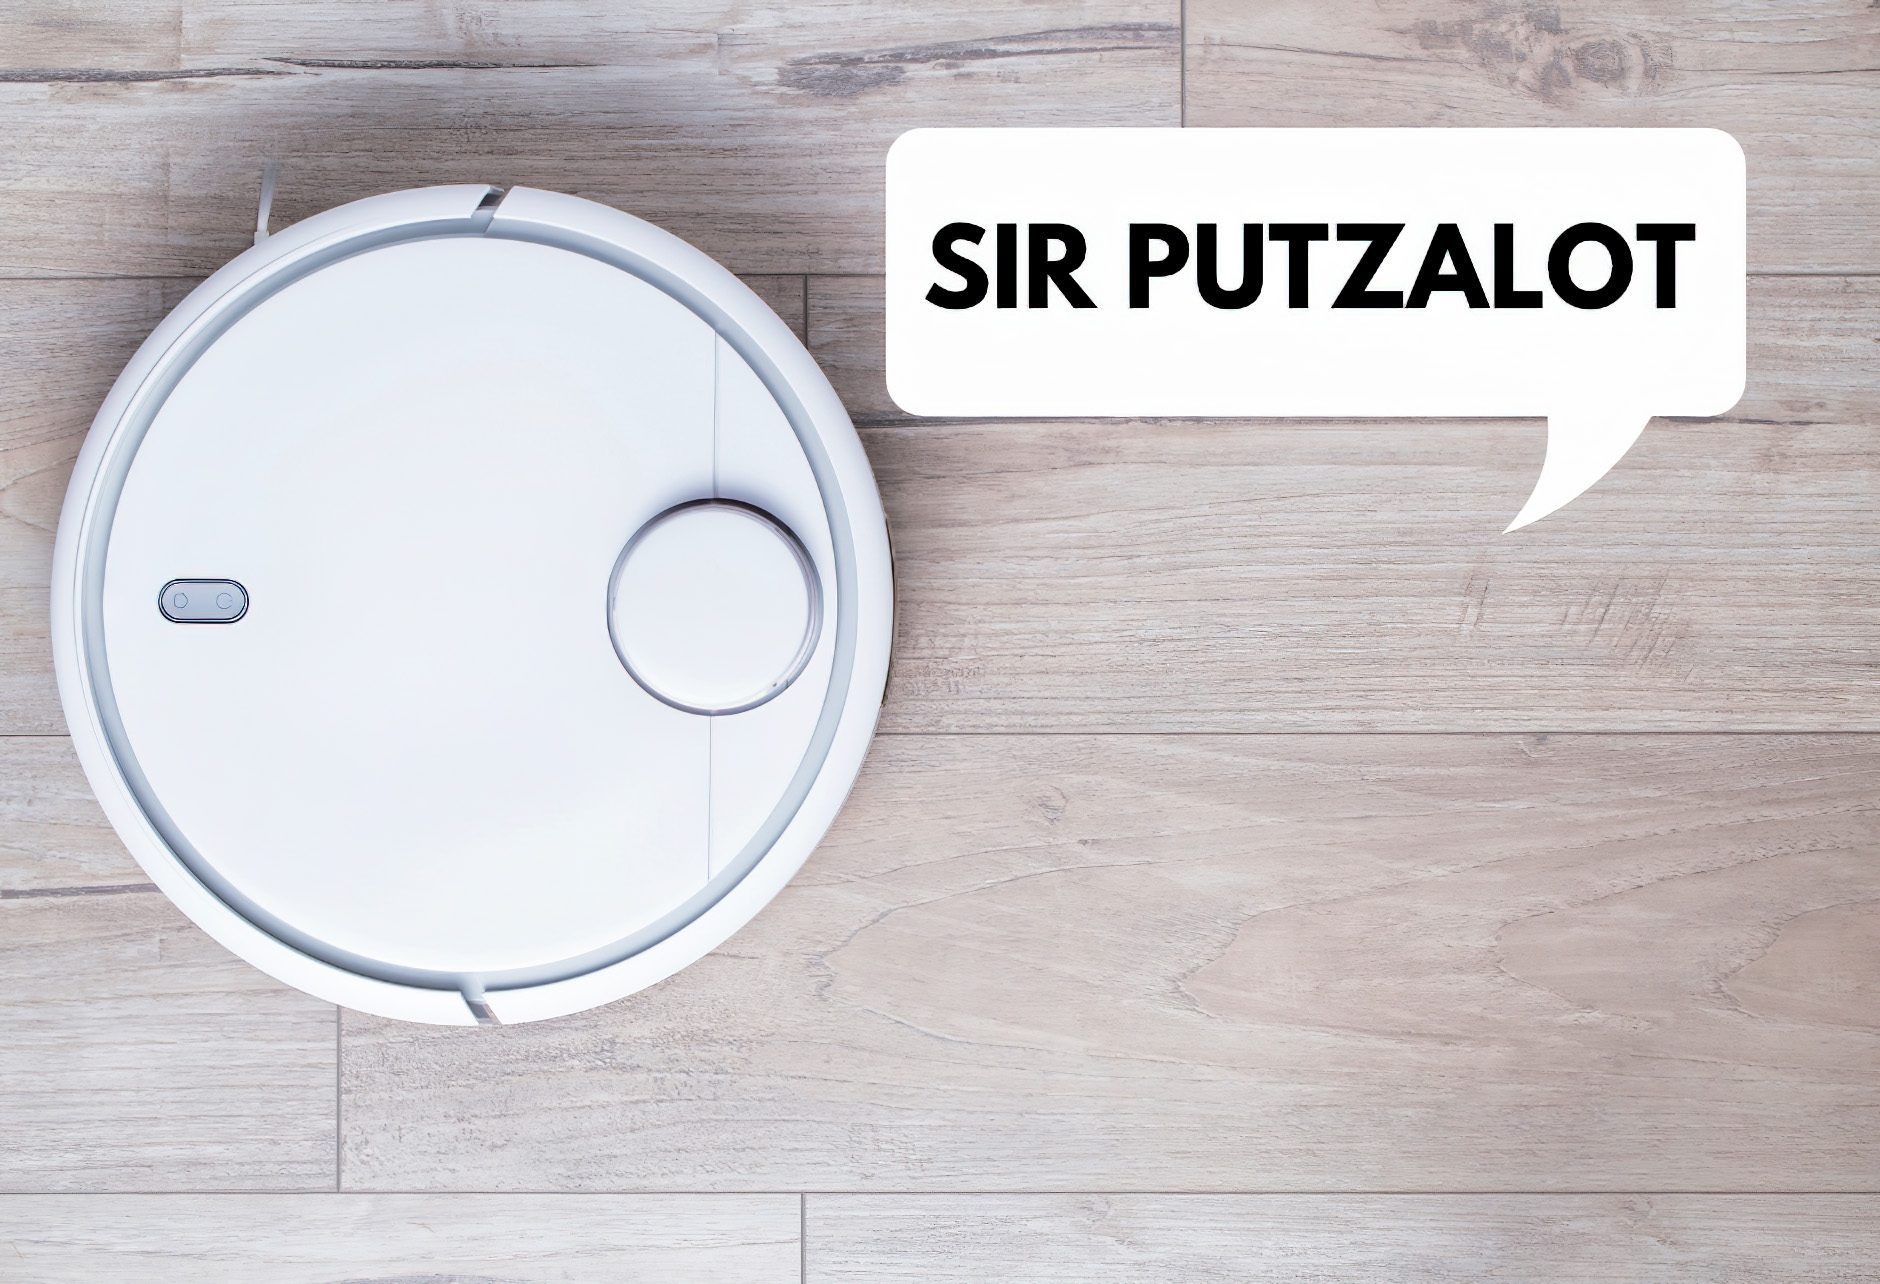 Mein unangefochtener Lieblingsname ist natürlich "Sir Putzalot", aber ich nehme an, das gefällt nicht allen.